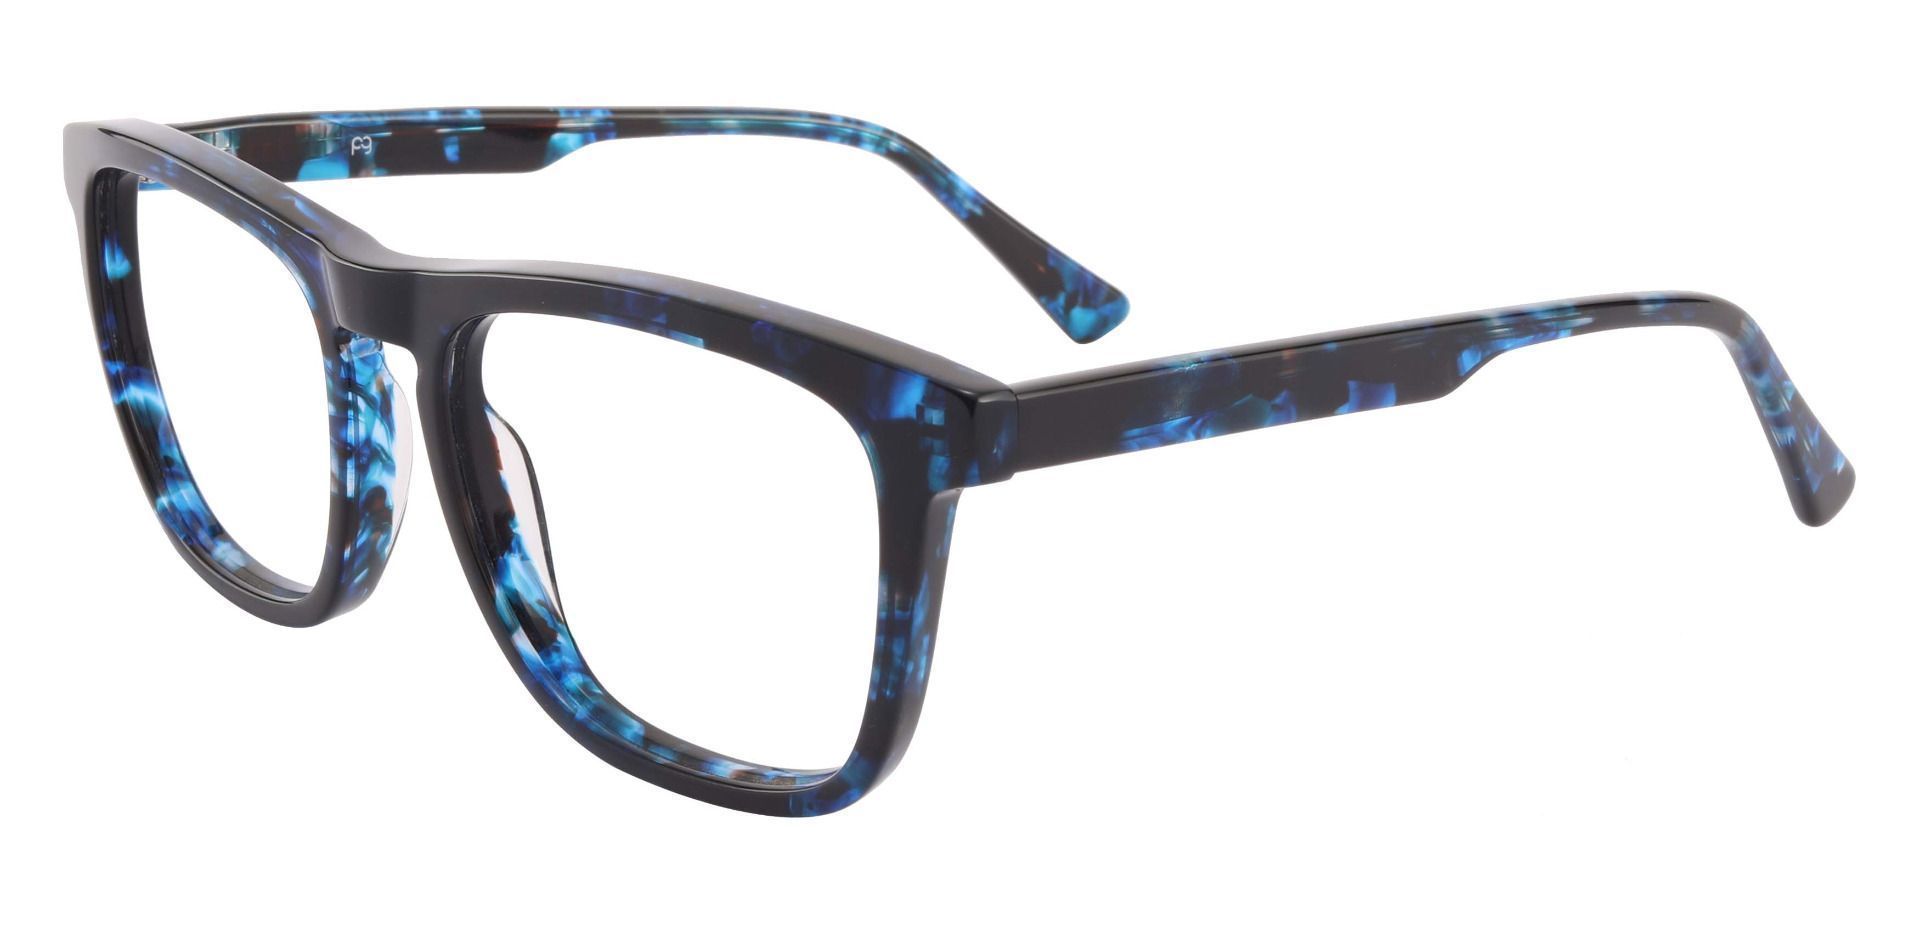 Reno Square Prescription Glasses - Blue